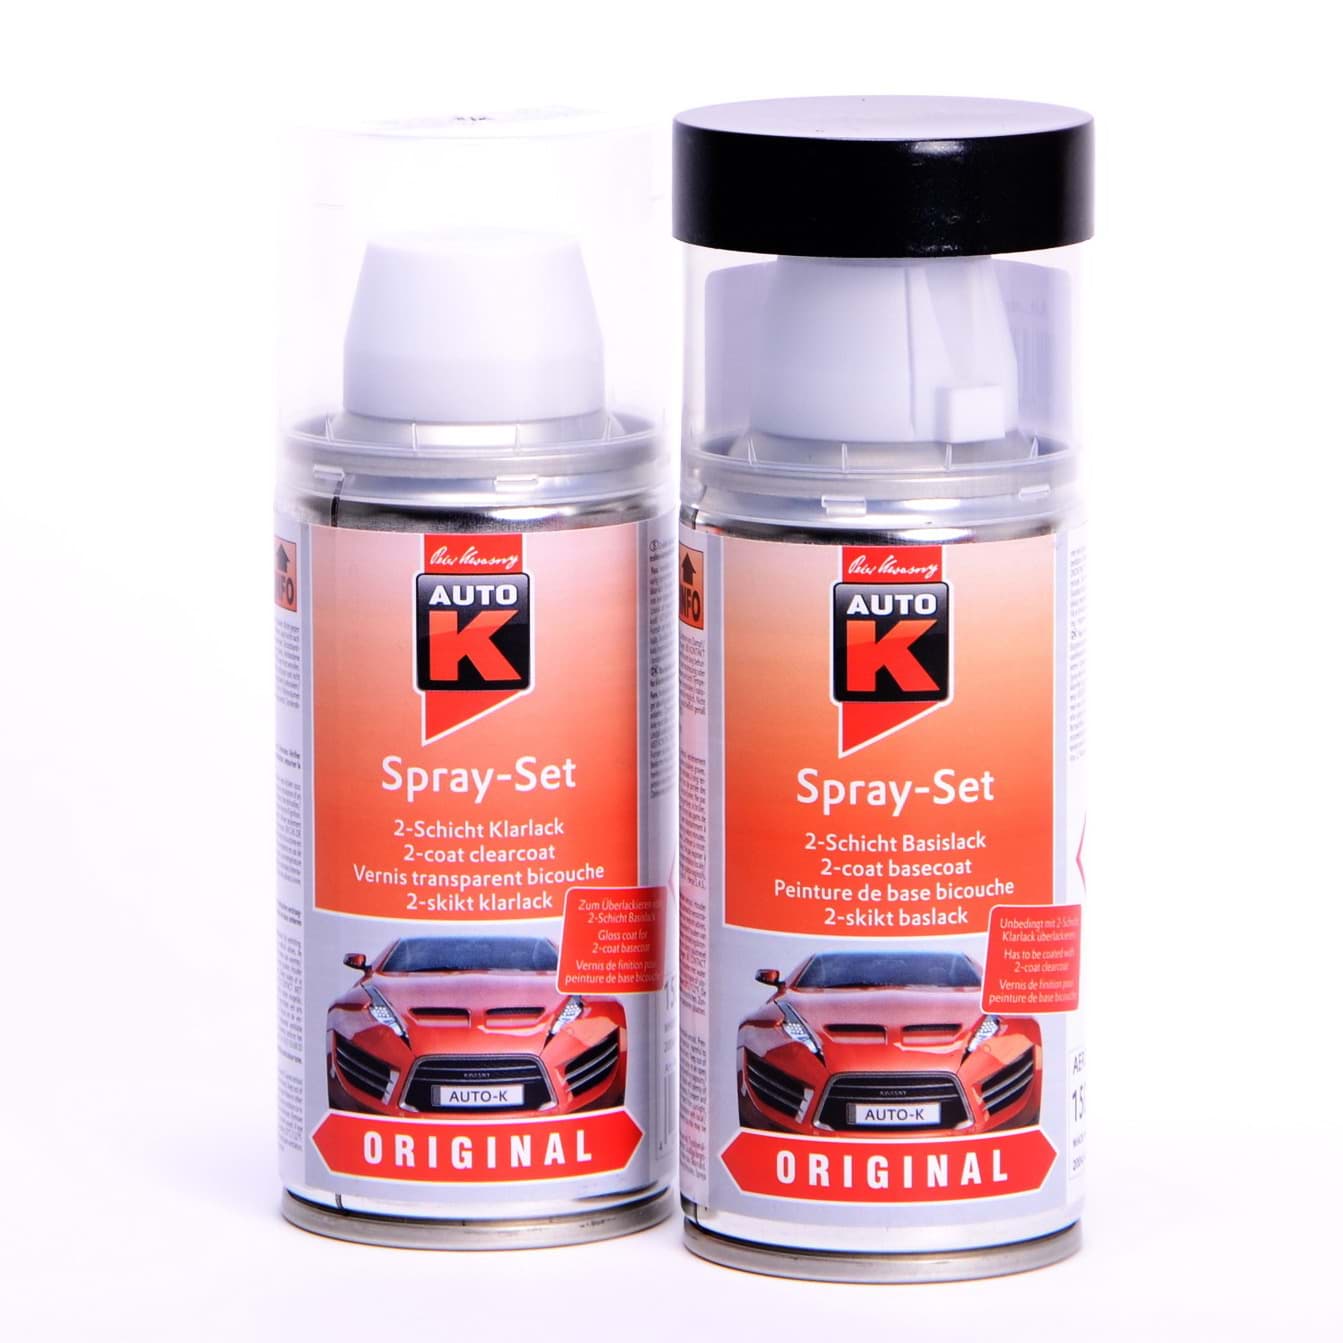 Auto-K Spray-Set Autolack für Opel 369 Rio Verde met 21425 resmi